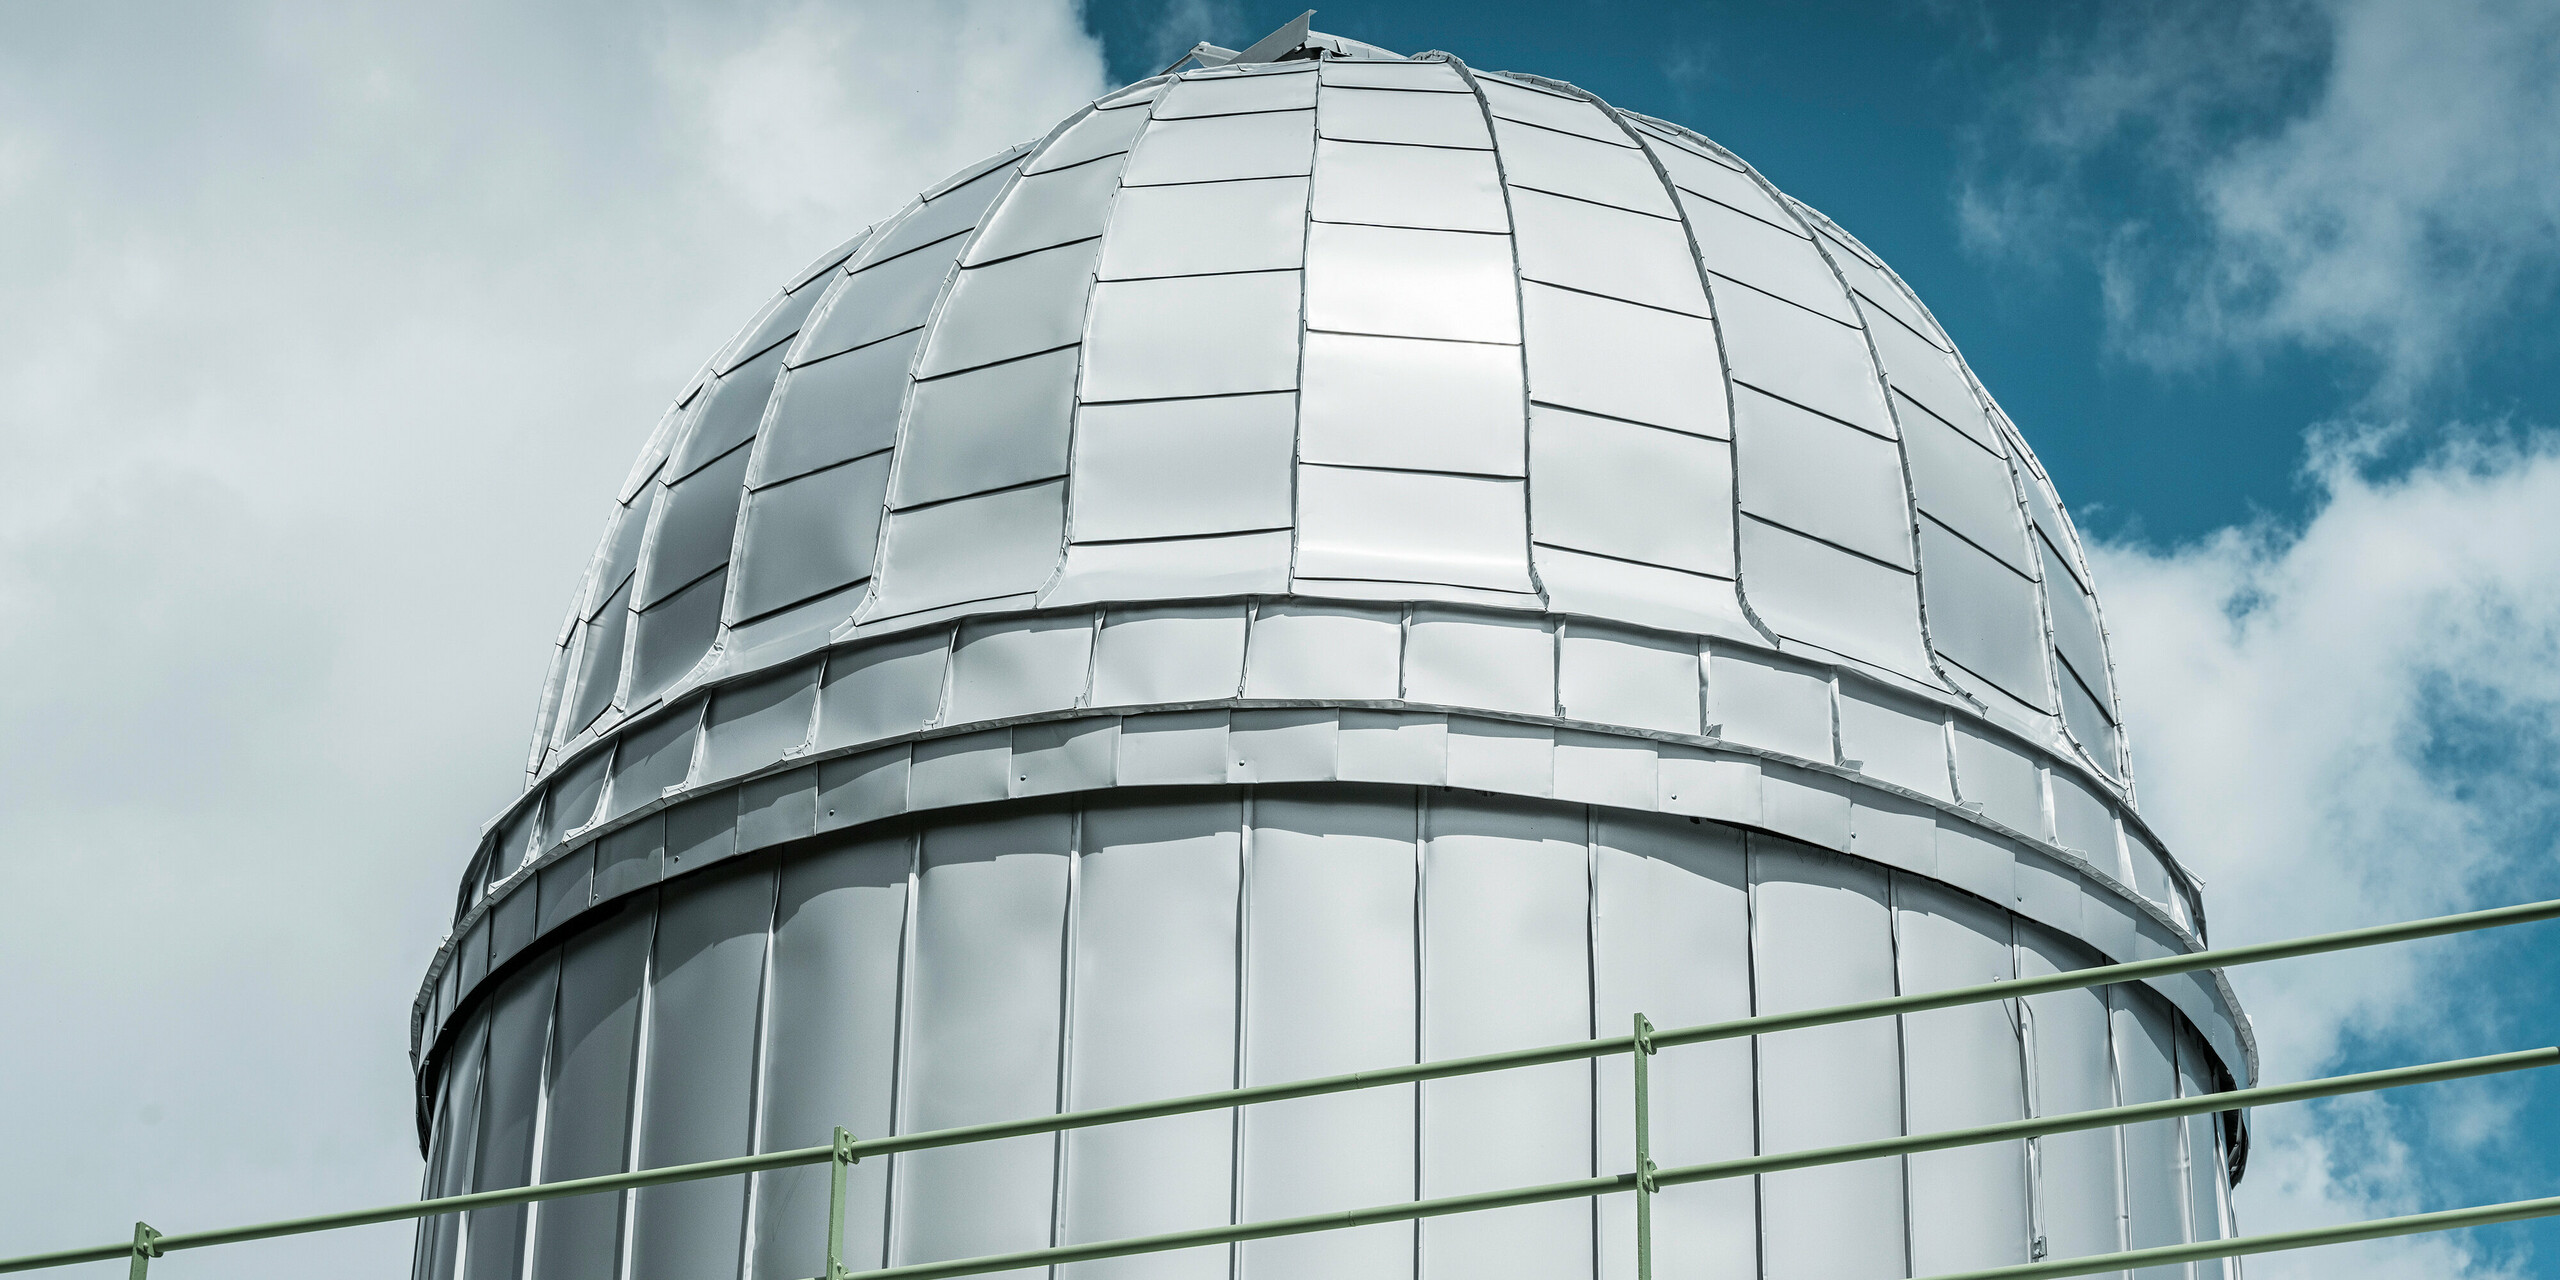 Eine Detailaufnahme der strahlenden Kuppel des Observatoriums von Skalnate Pleso, die mit PREFALZ in Silbermetallic verkleidet ist. Die glänzende Aluminiumverkleidung spiegelt den blauen Himmel wider und symbolisiert die Widerstandsfähigkeit gegen die rauen klimatischen Bedingungen in einer Höhe von 1.783 Metern.